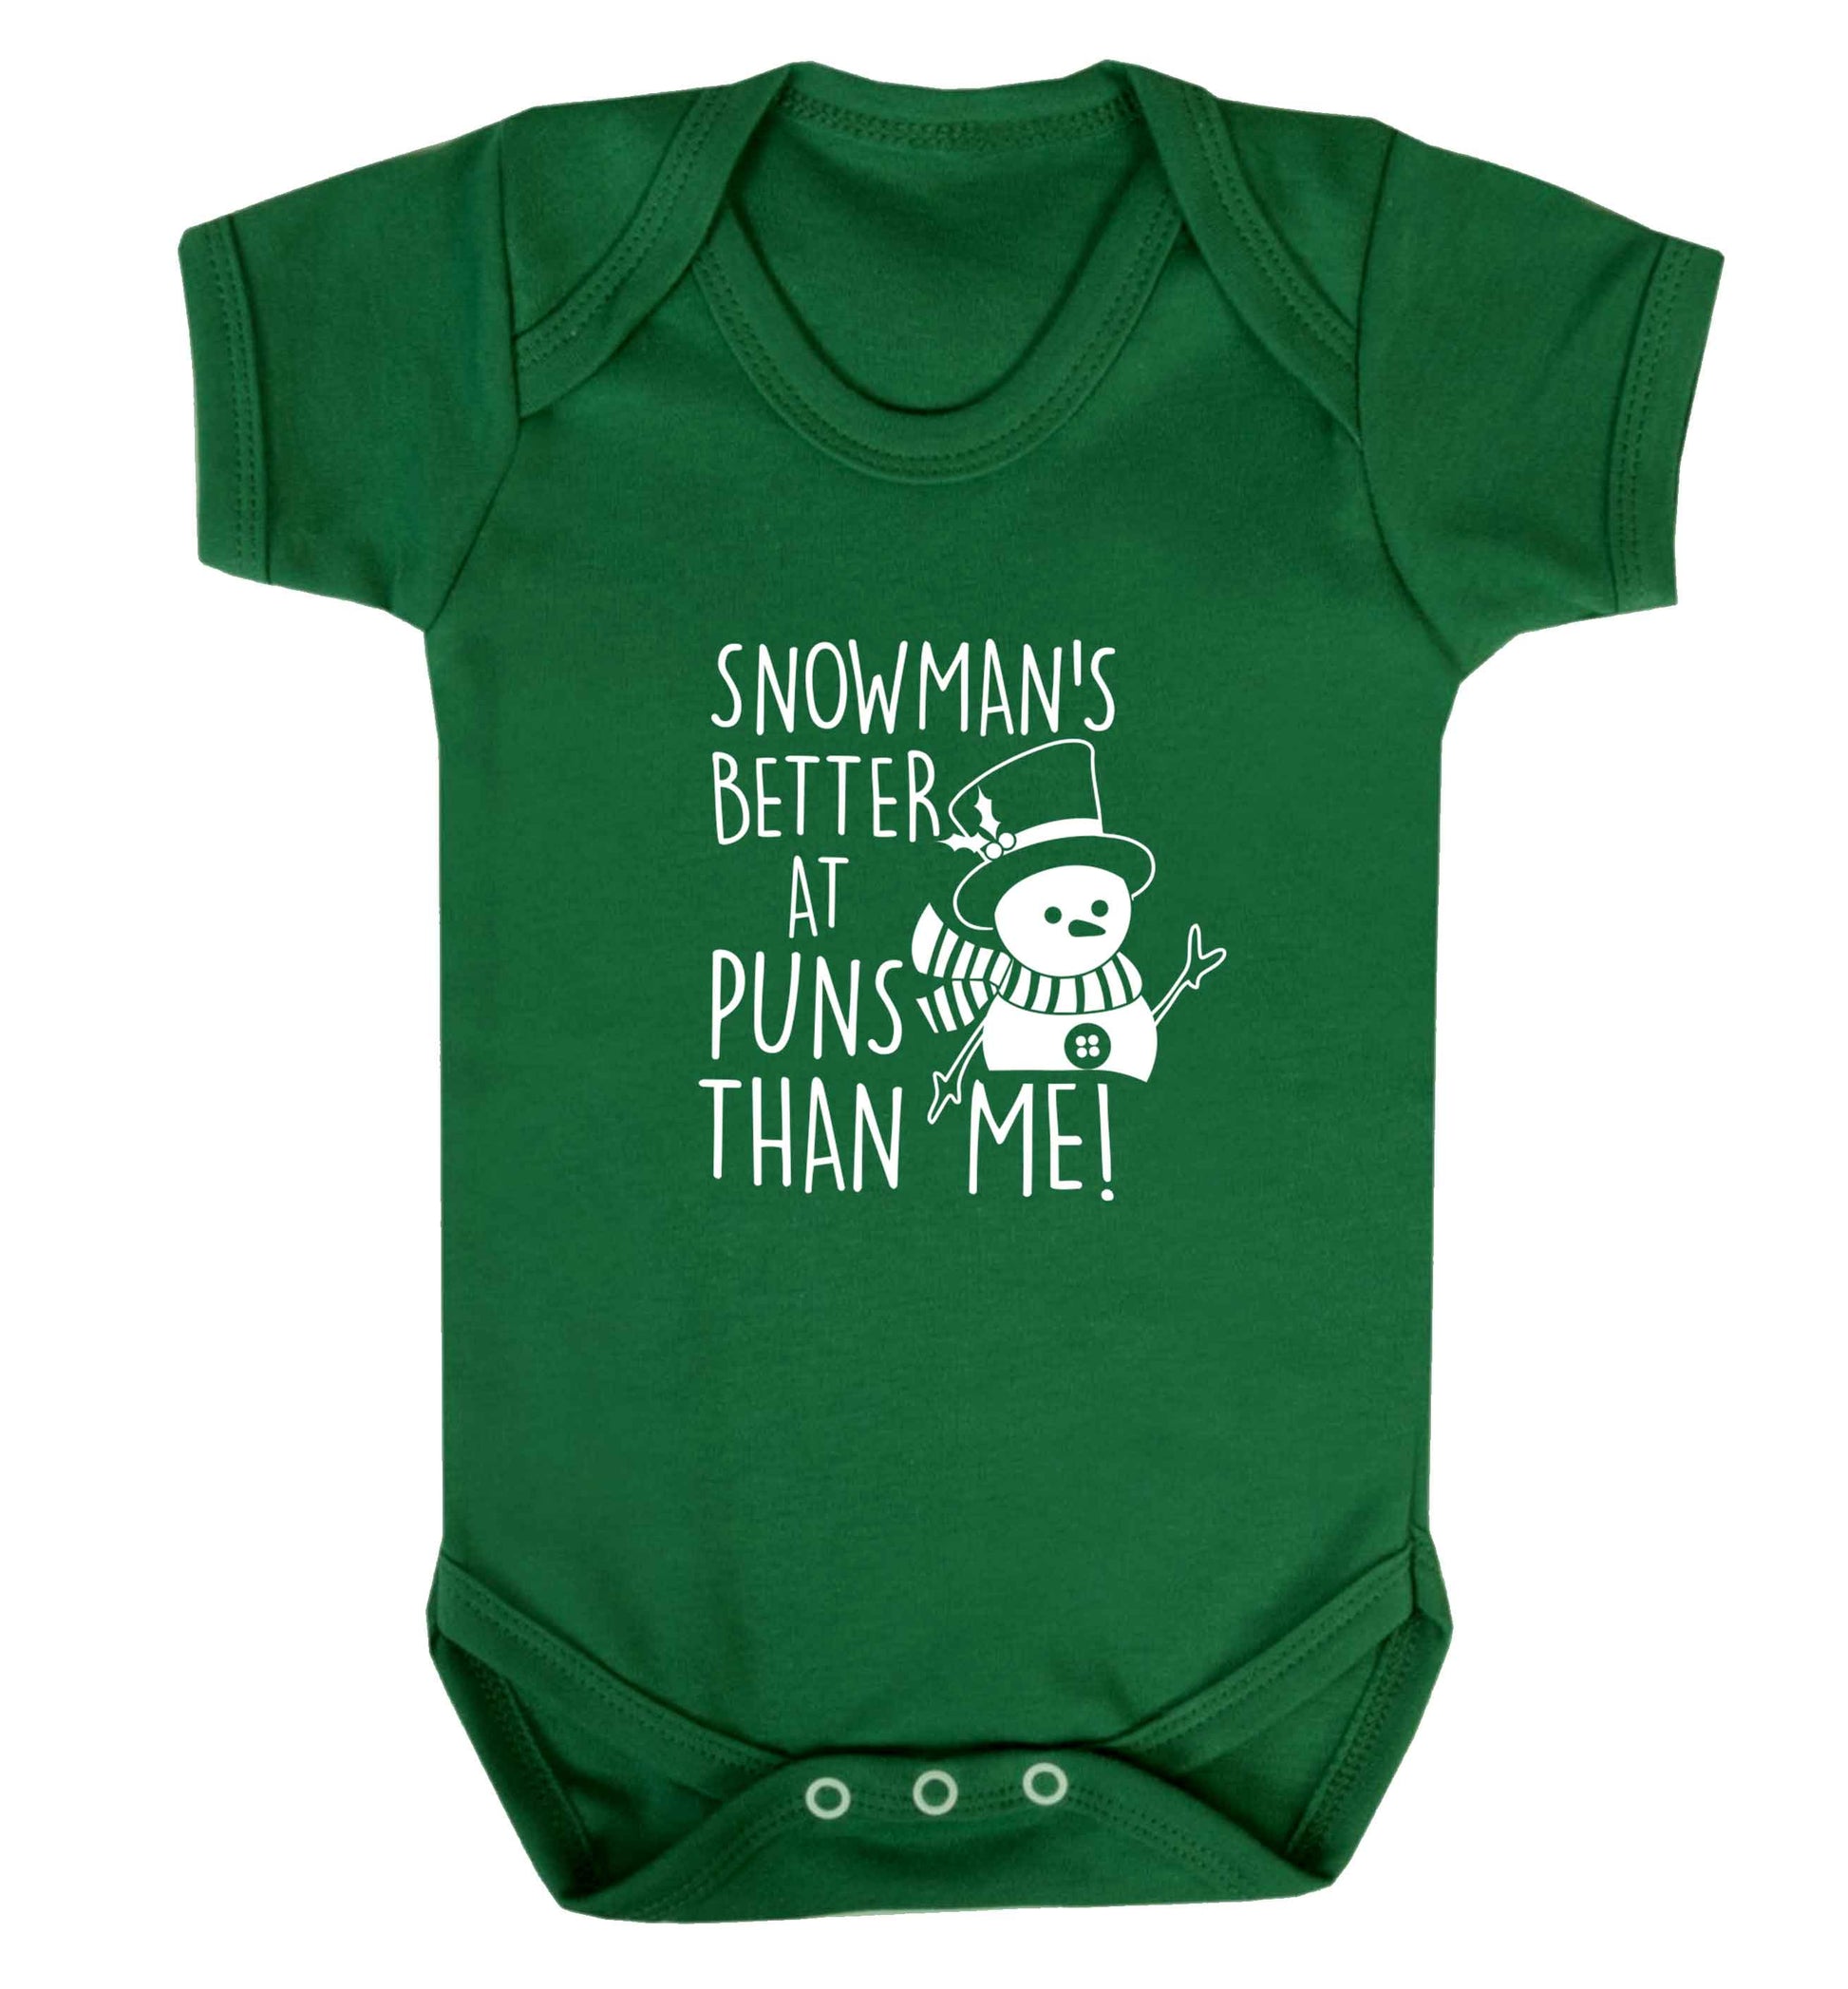 Snowman's Puns Me baby vest green 18-24 months